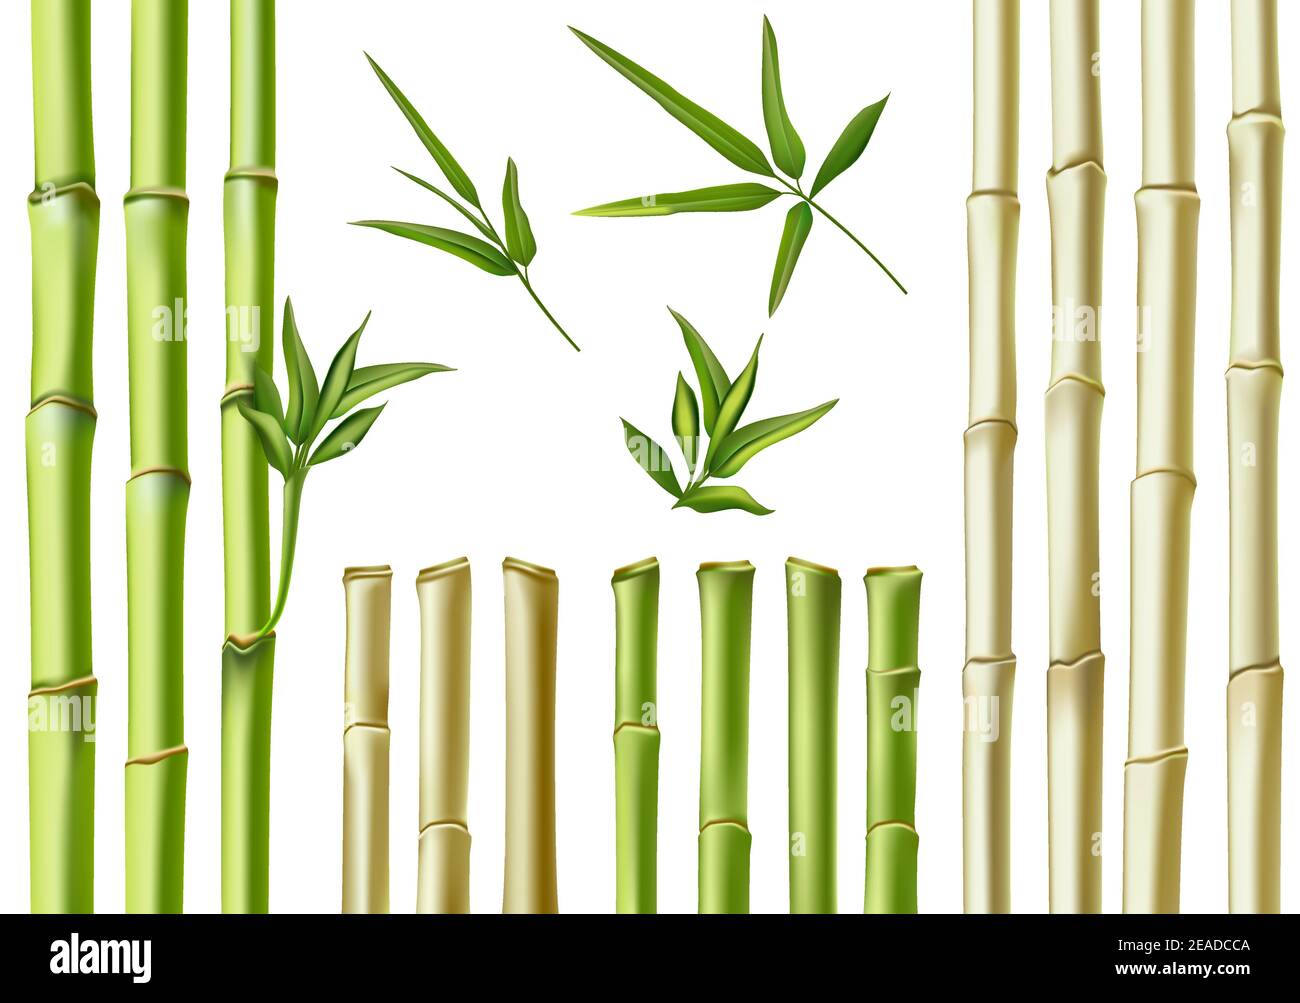 Bâtonnets de bambou réalistes. branches, tiges et feuilles vertes et brunes en 3d. Nature plantes creuses cannes. Ensemble de vecteurs de décoration écologique en bambou asiatique Illustration de Vecteur